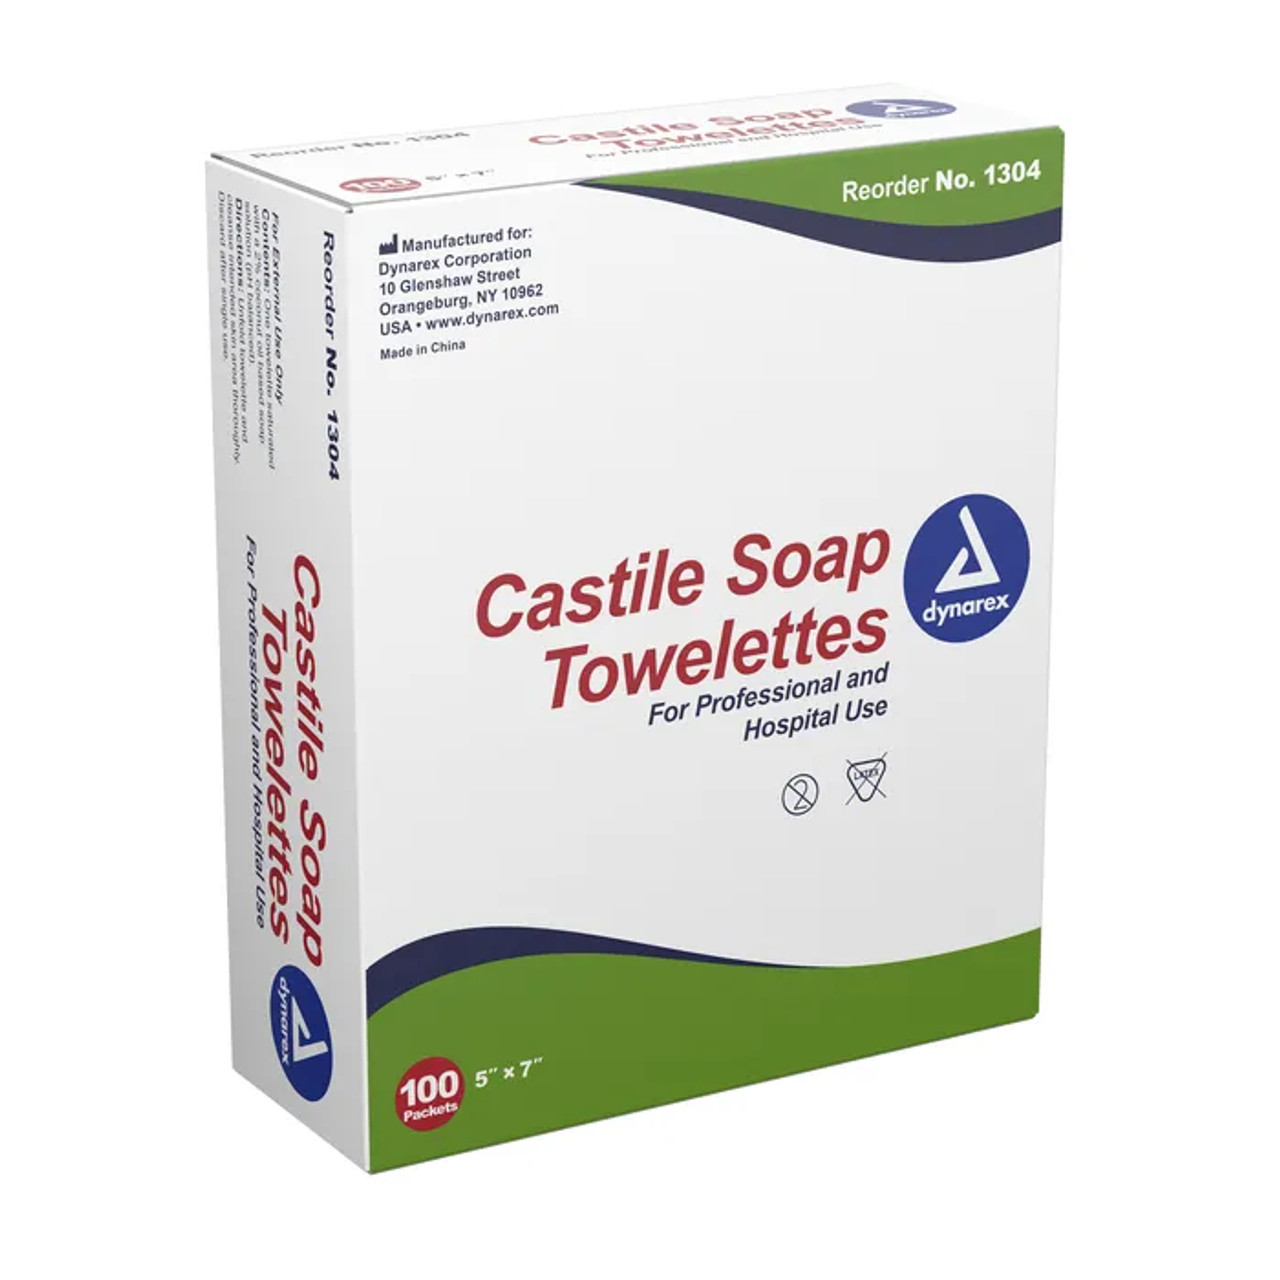 Castile Soap Towelettes, 5" X 7"